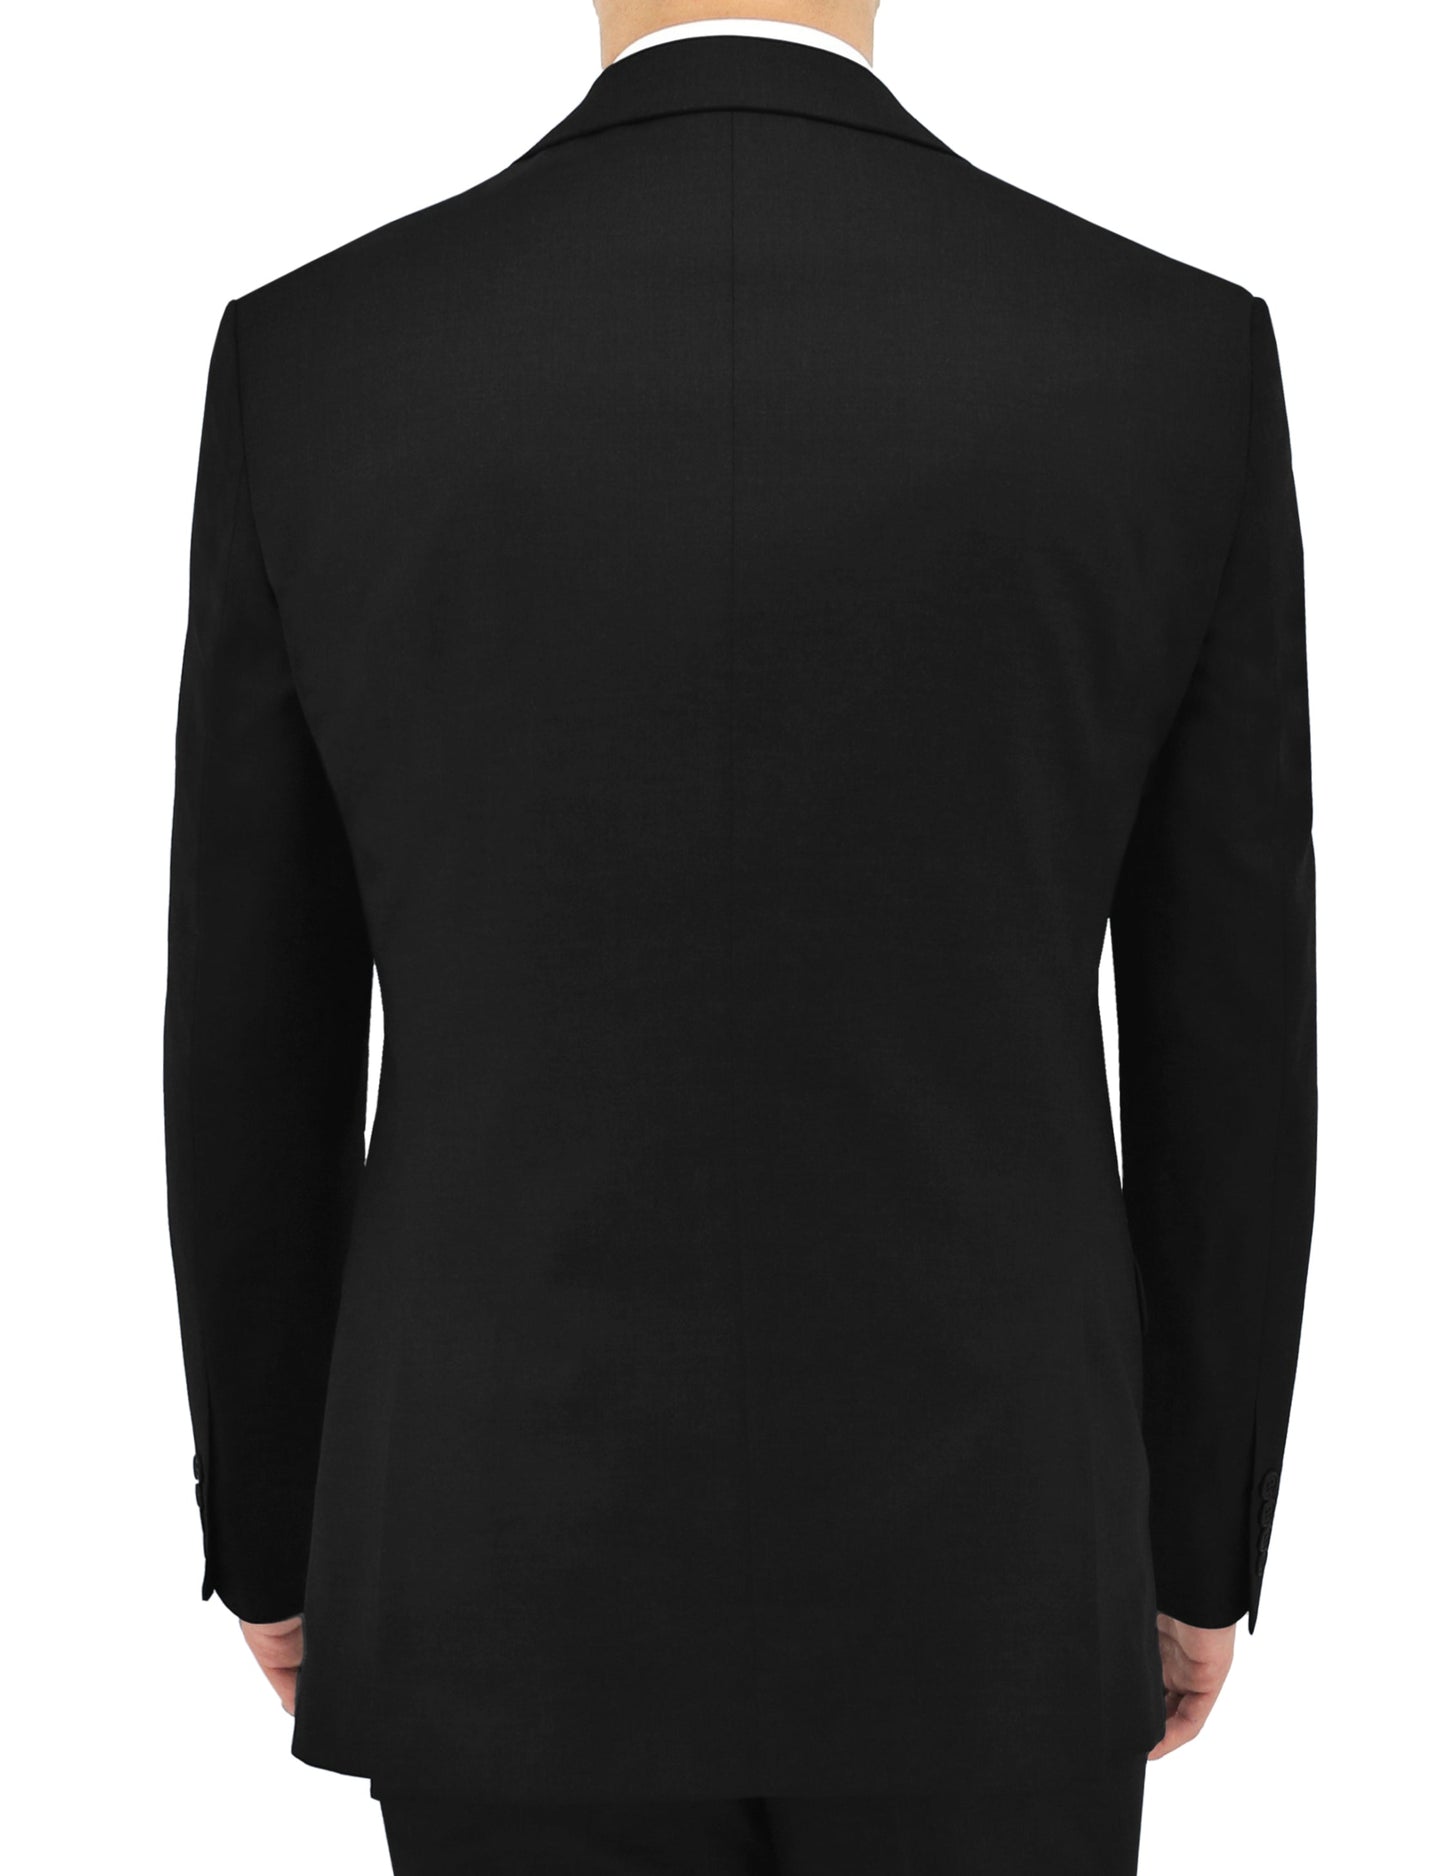 Michel Black Suit Jacket